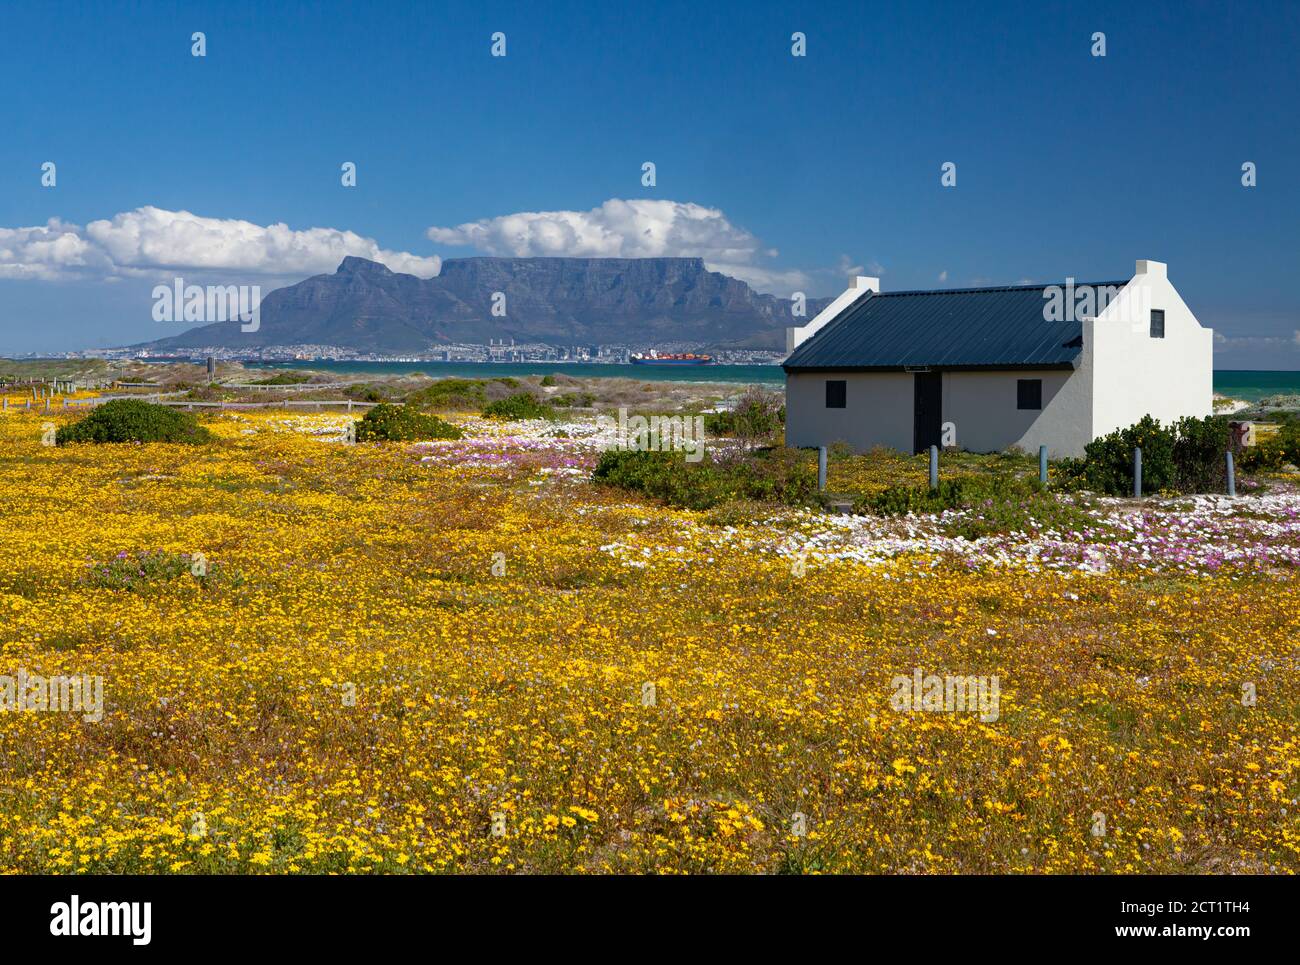 carte postale vue sur la montagne de la table cape town afrique du sud avec fleurs de printemps colorées de la destination touristique de bloubergstrand Banque D'Images